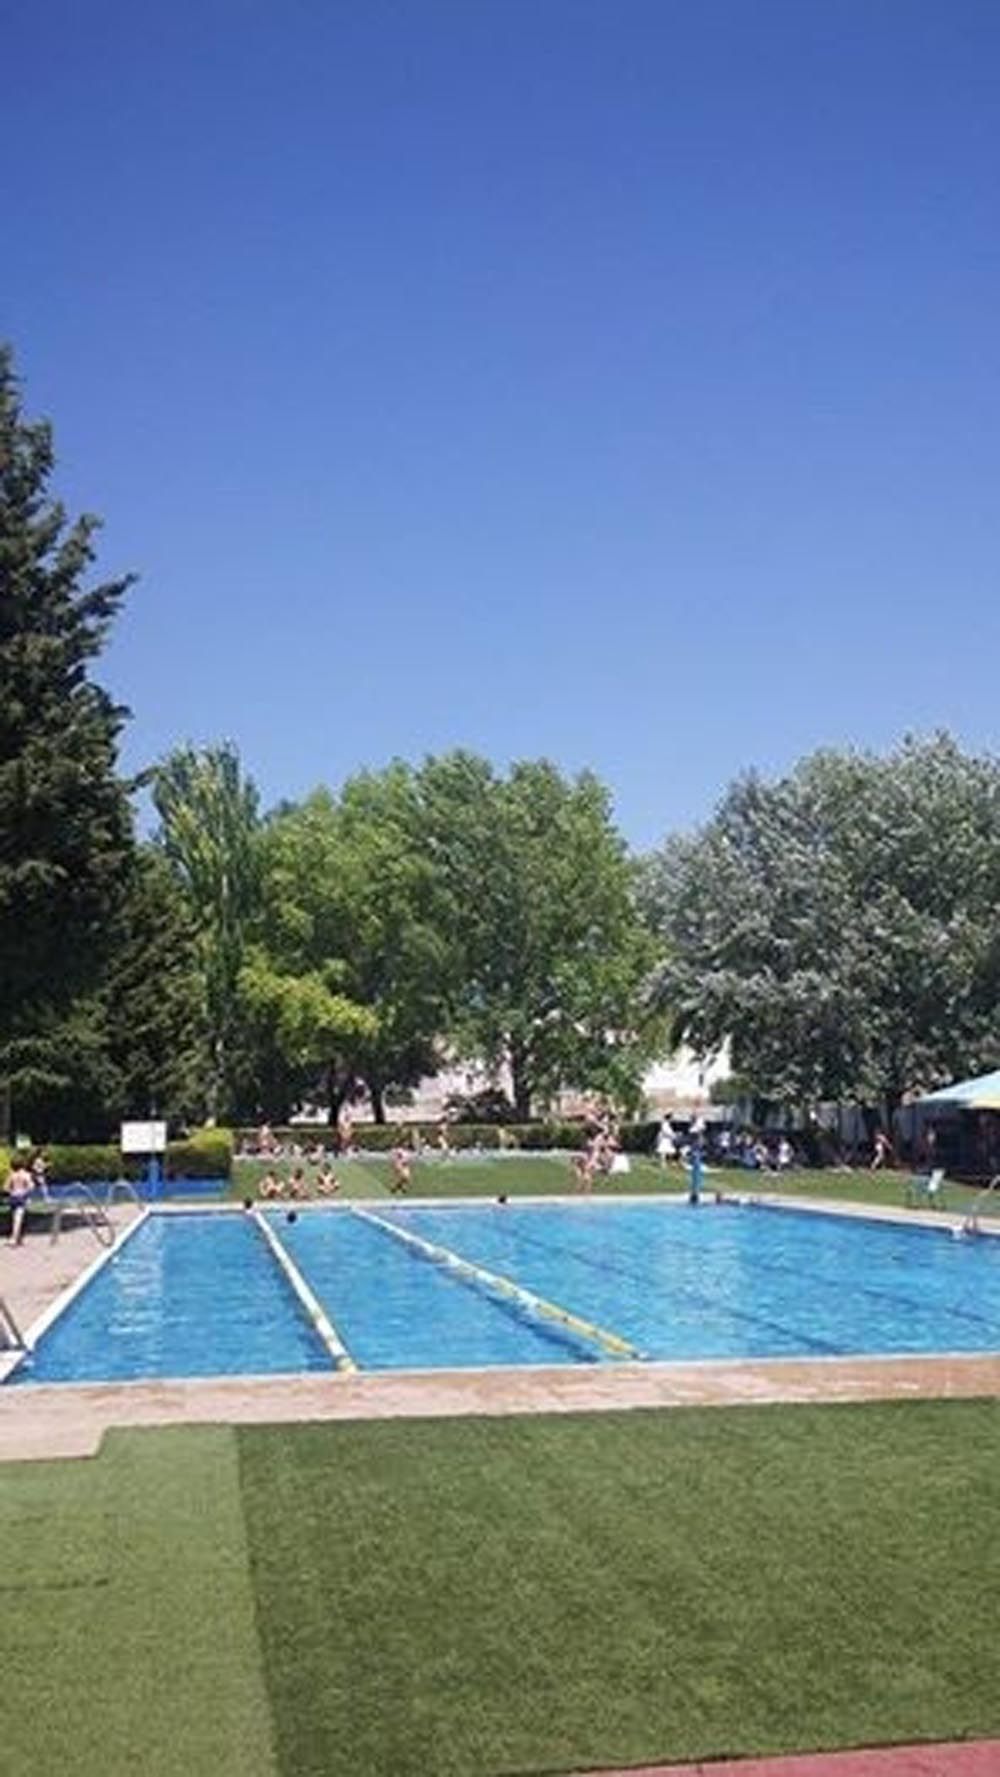 El sábado, 25 de junio, se abrirá al público la piscina de verano de Cehegín